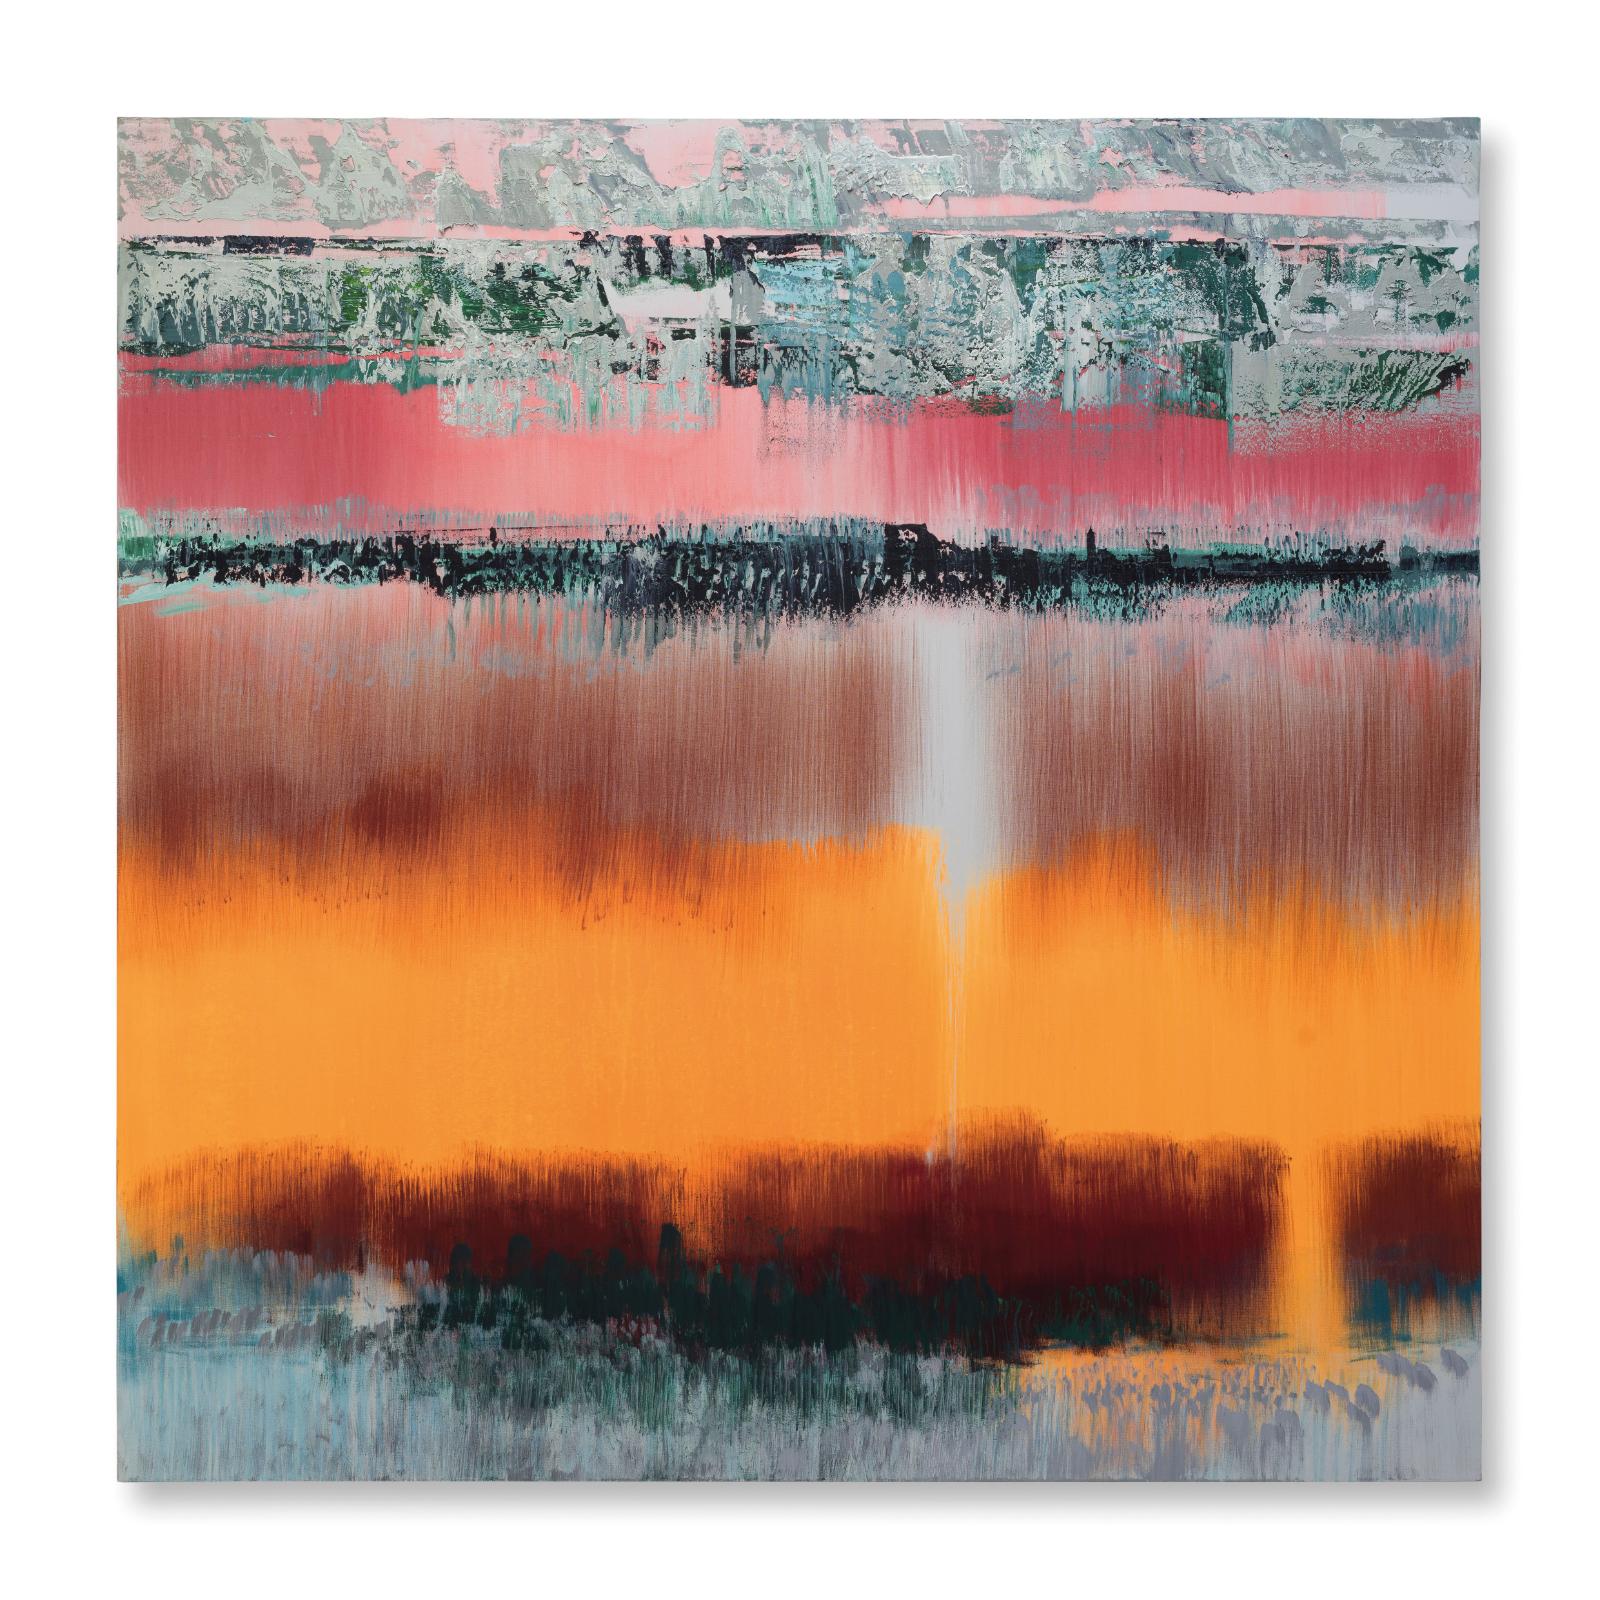 Bruno Kurz, Korona 3, 2018, Acryl, Öl auf Leinwand, 180 cm x 180 cm, kub100kü